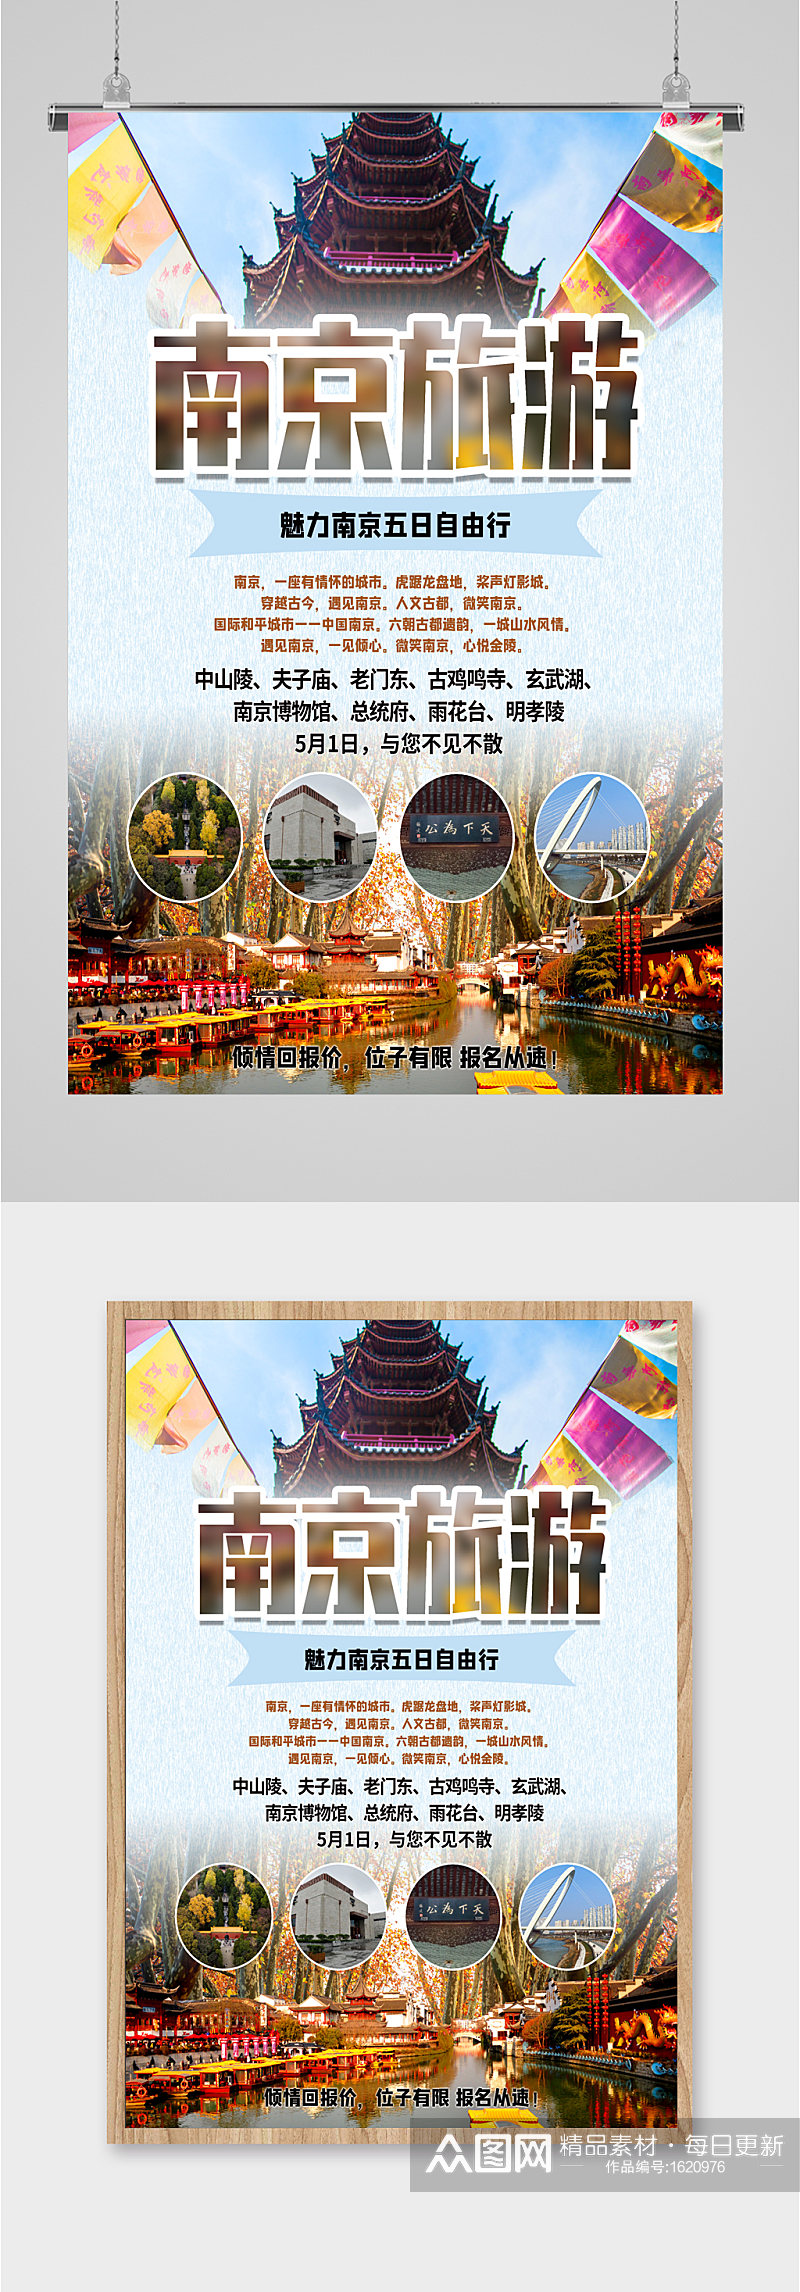 南京旅游出行景点优惠海报素材